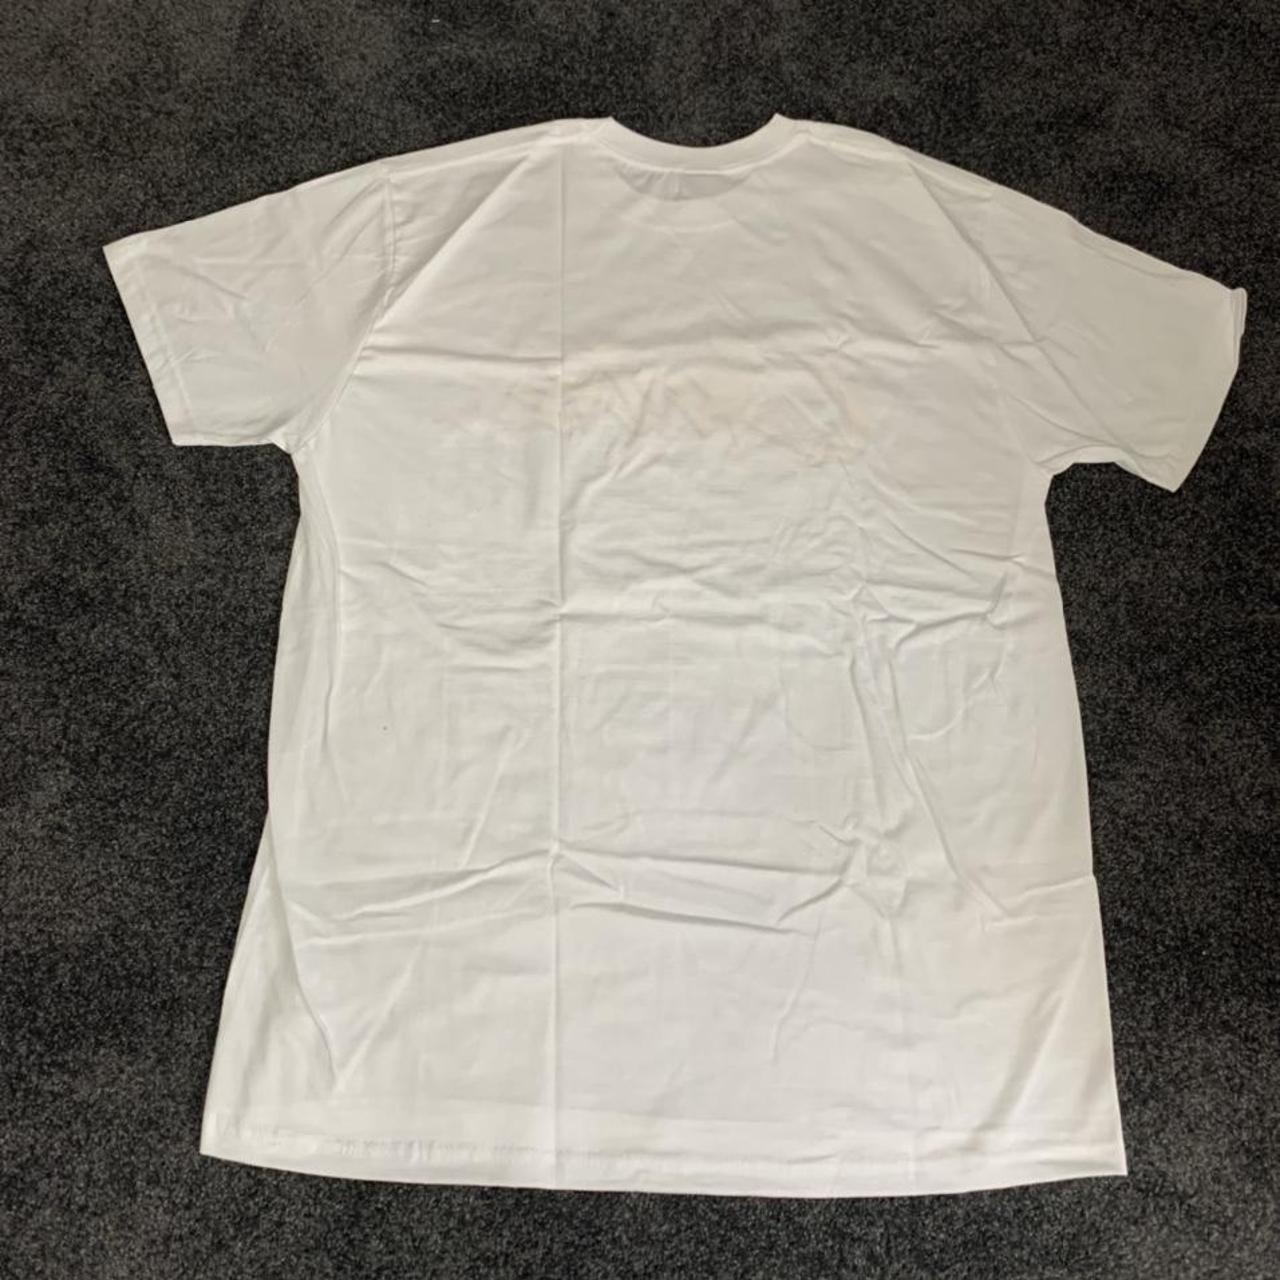 Corteiz White T shirt 🤩 High Demand 📈 Condition... - Depop